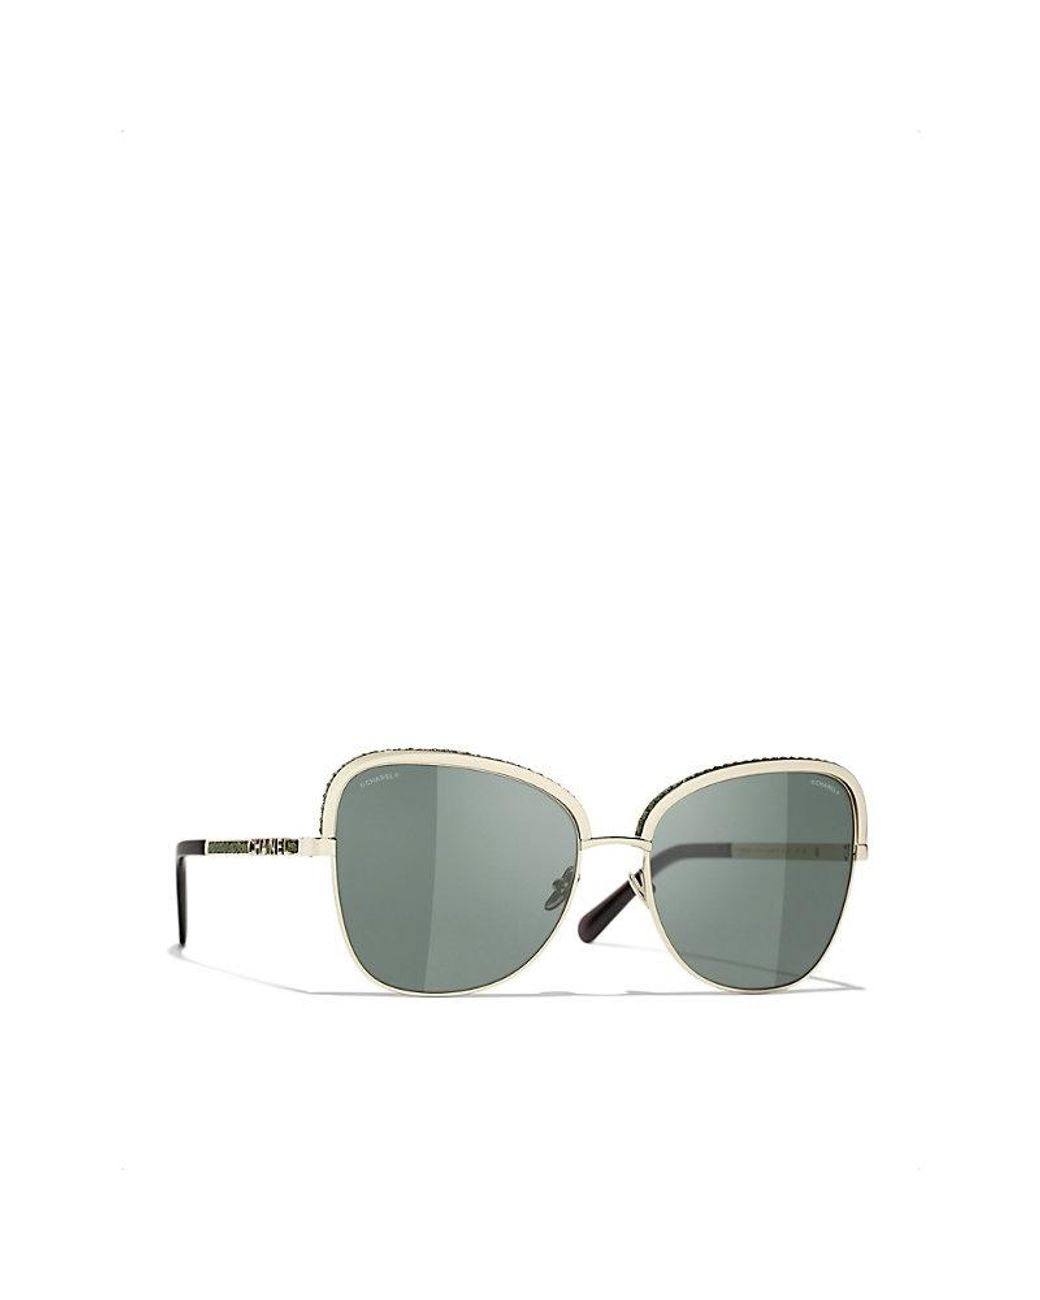 Chanel Square Sunglasses in Green